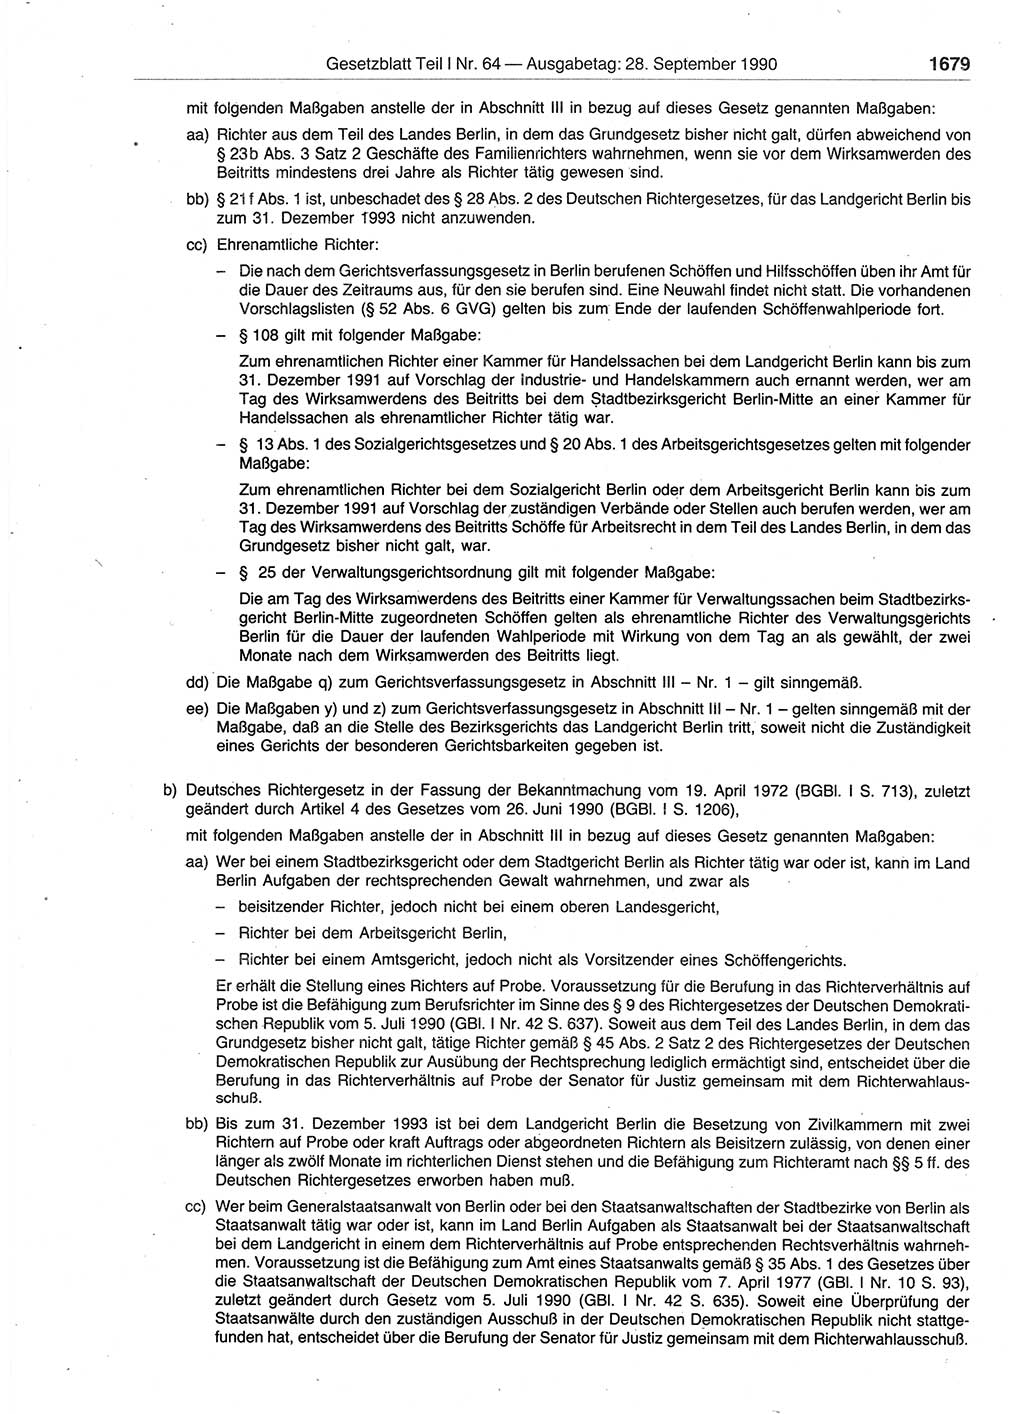 Gesetzblatt (GBl.) der Deutschen Demokratischen Republik (DDR) Teil Ⅰ 1990, Seite 1679 (GBl. DDR Ⅰ 1990, S. 1679)